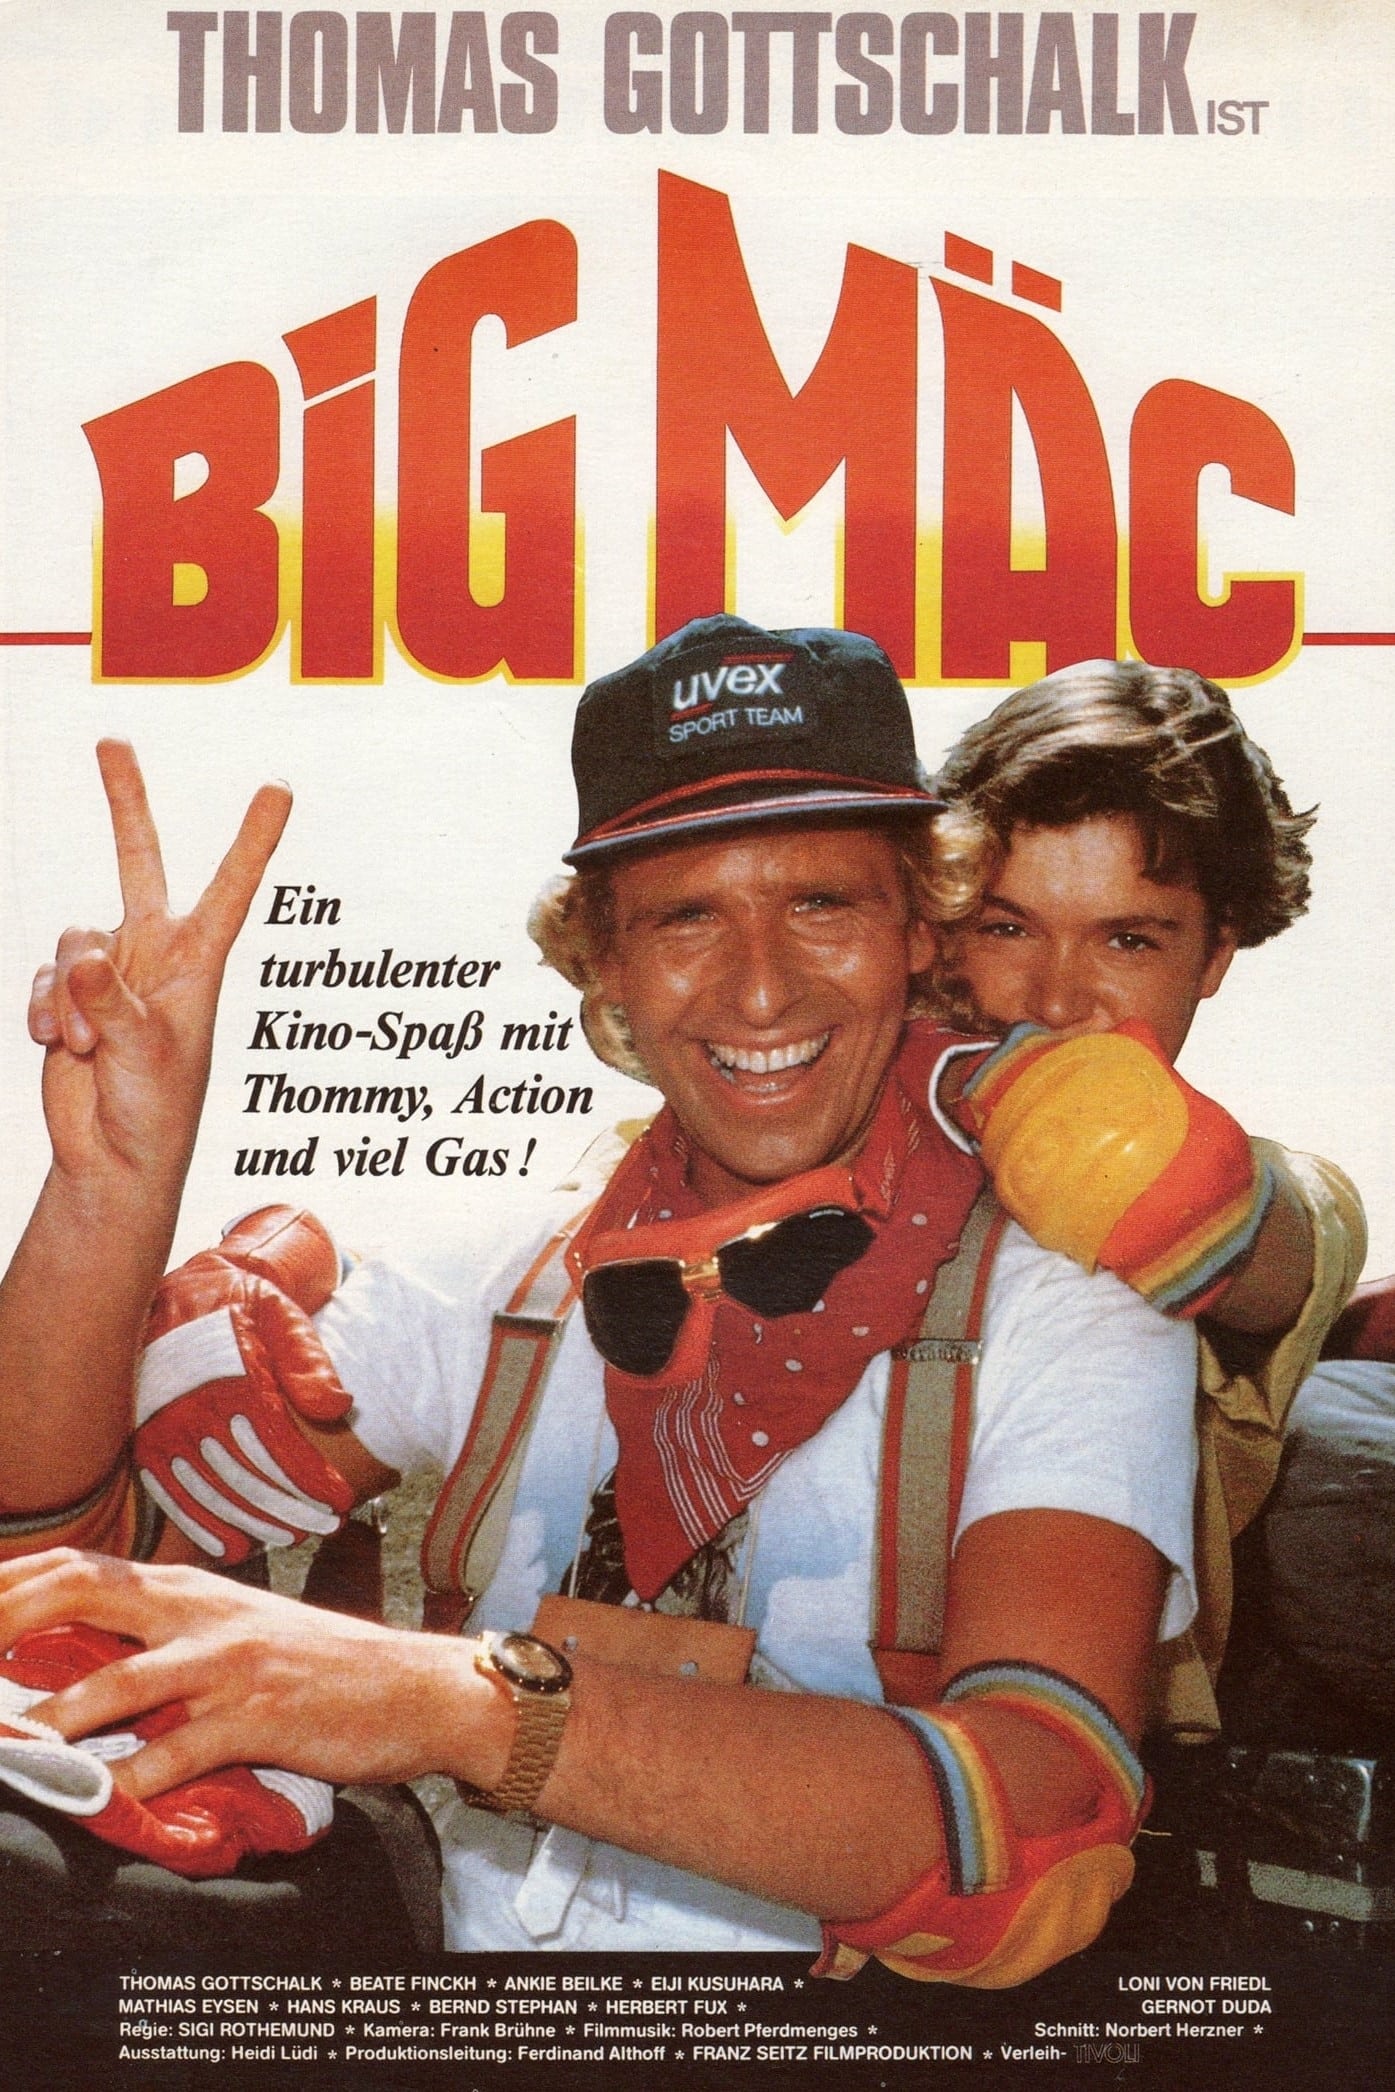 Big Mäc (1985)